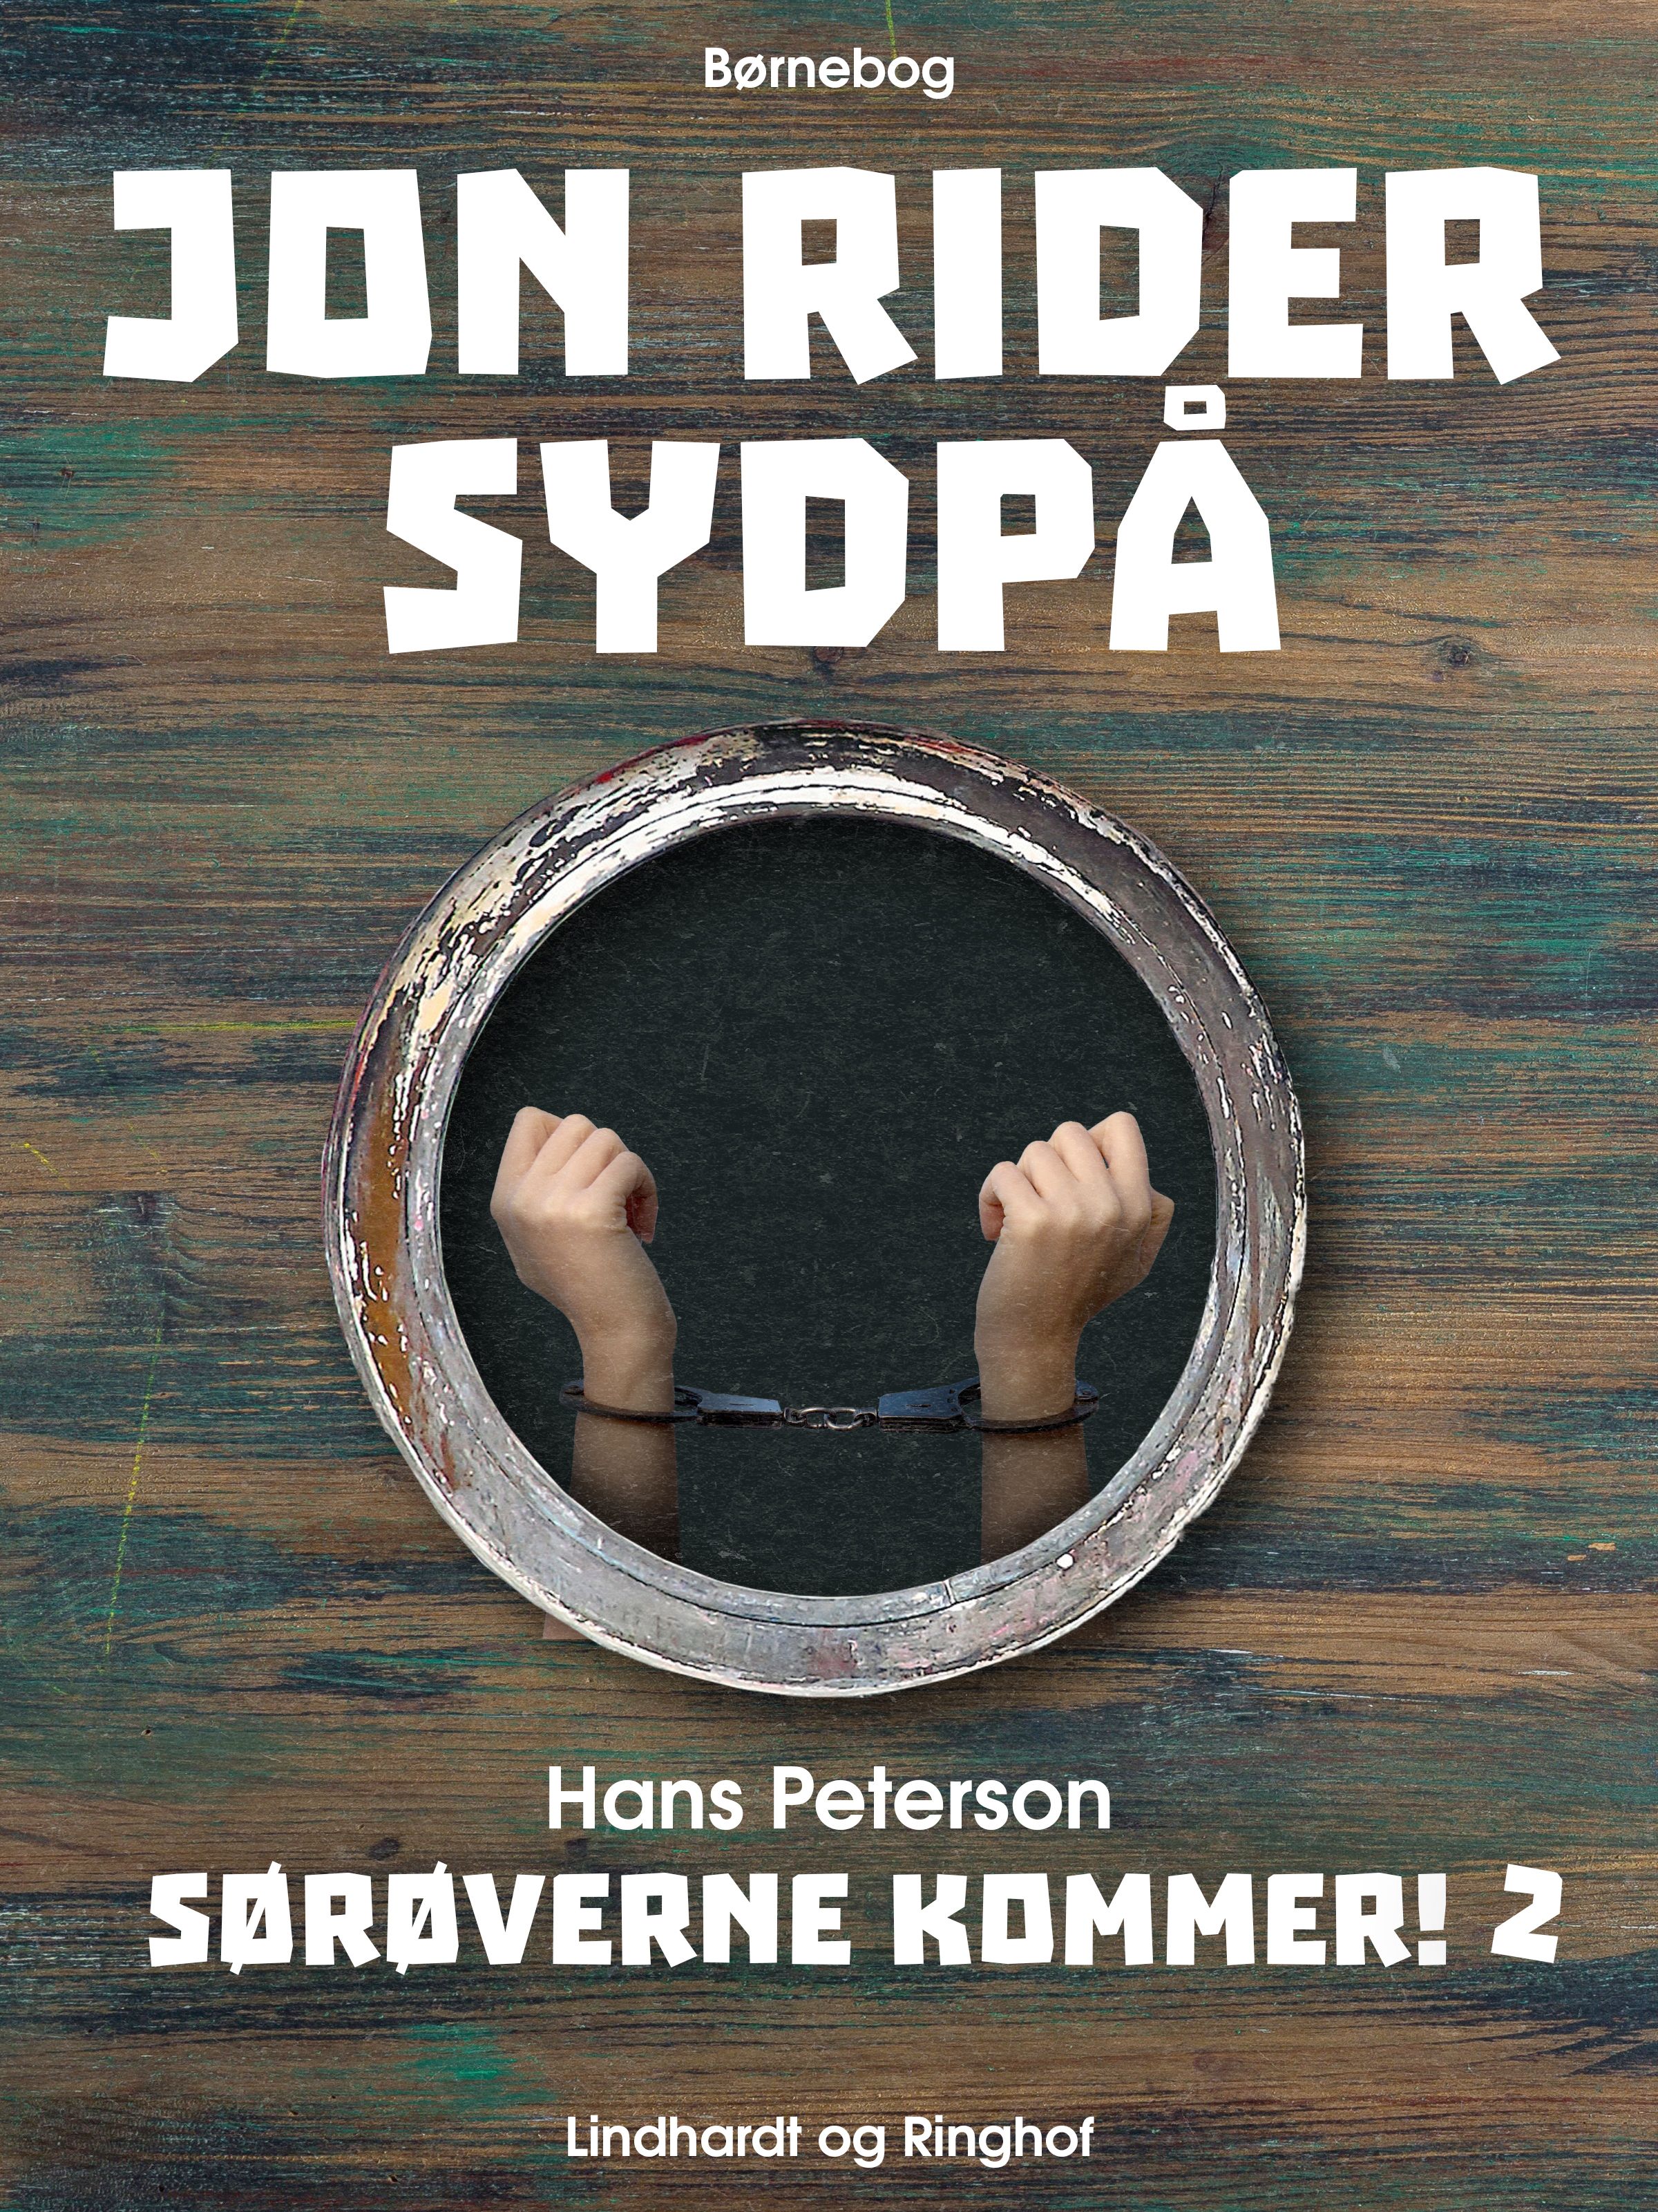 Jon rider sydpå, audiobook by Hans Peterson